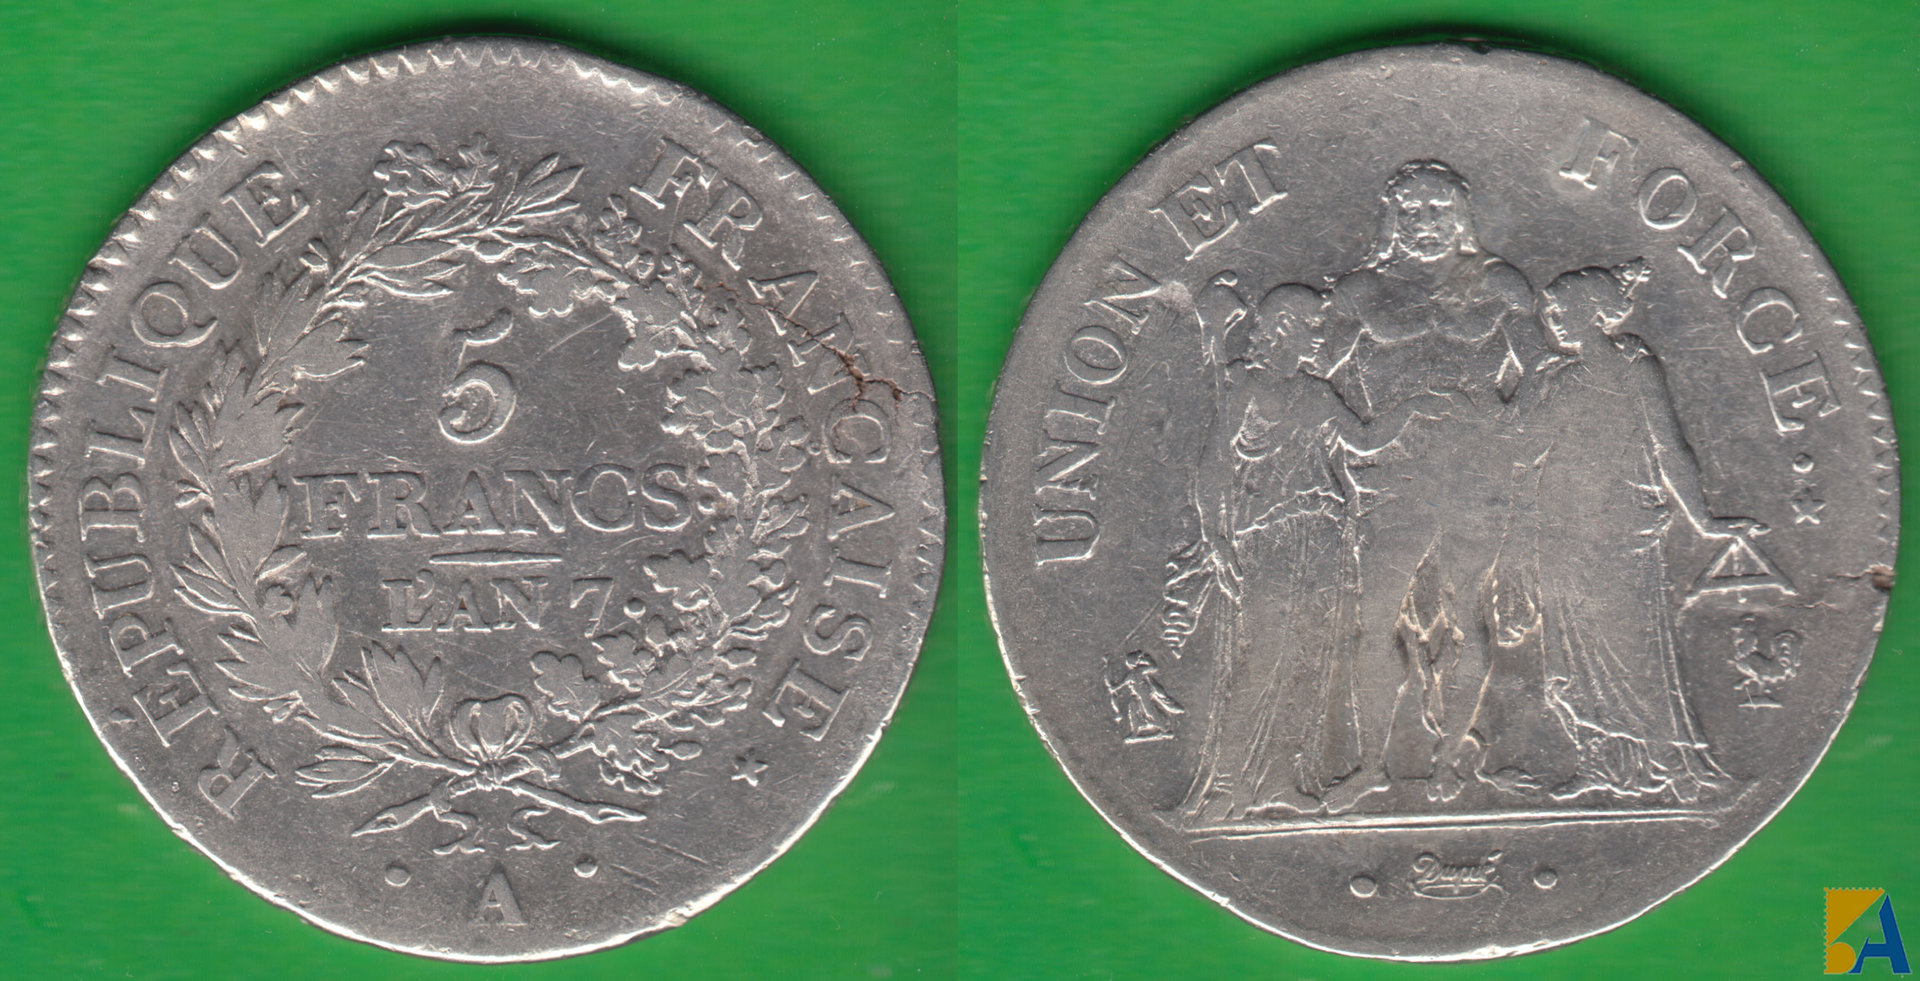 FRANCIA - FRANCE. 5 FRANCOS (FRANCS) DE 1798-99. AÑO 7. PLATA 0.900